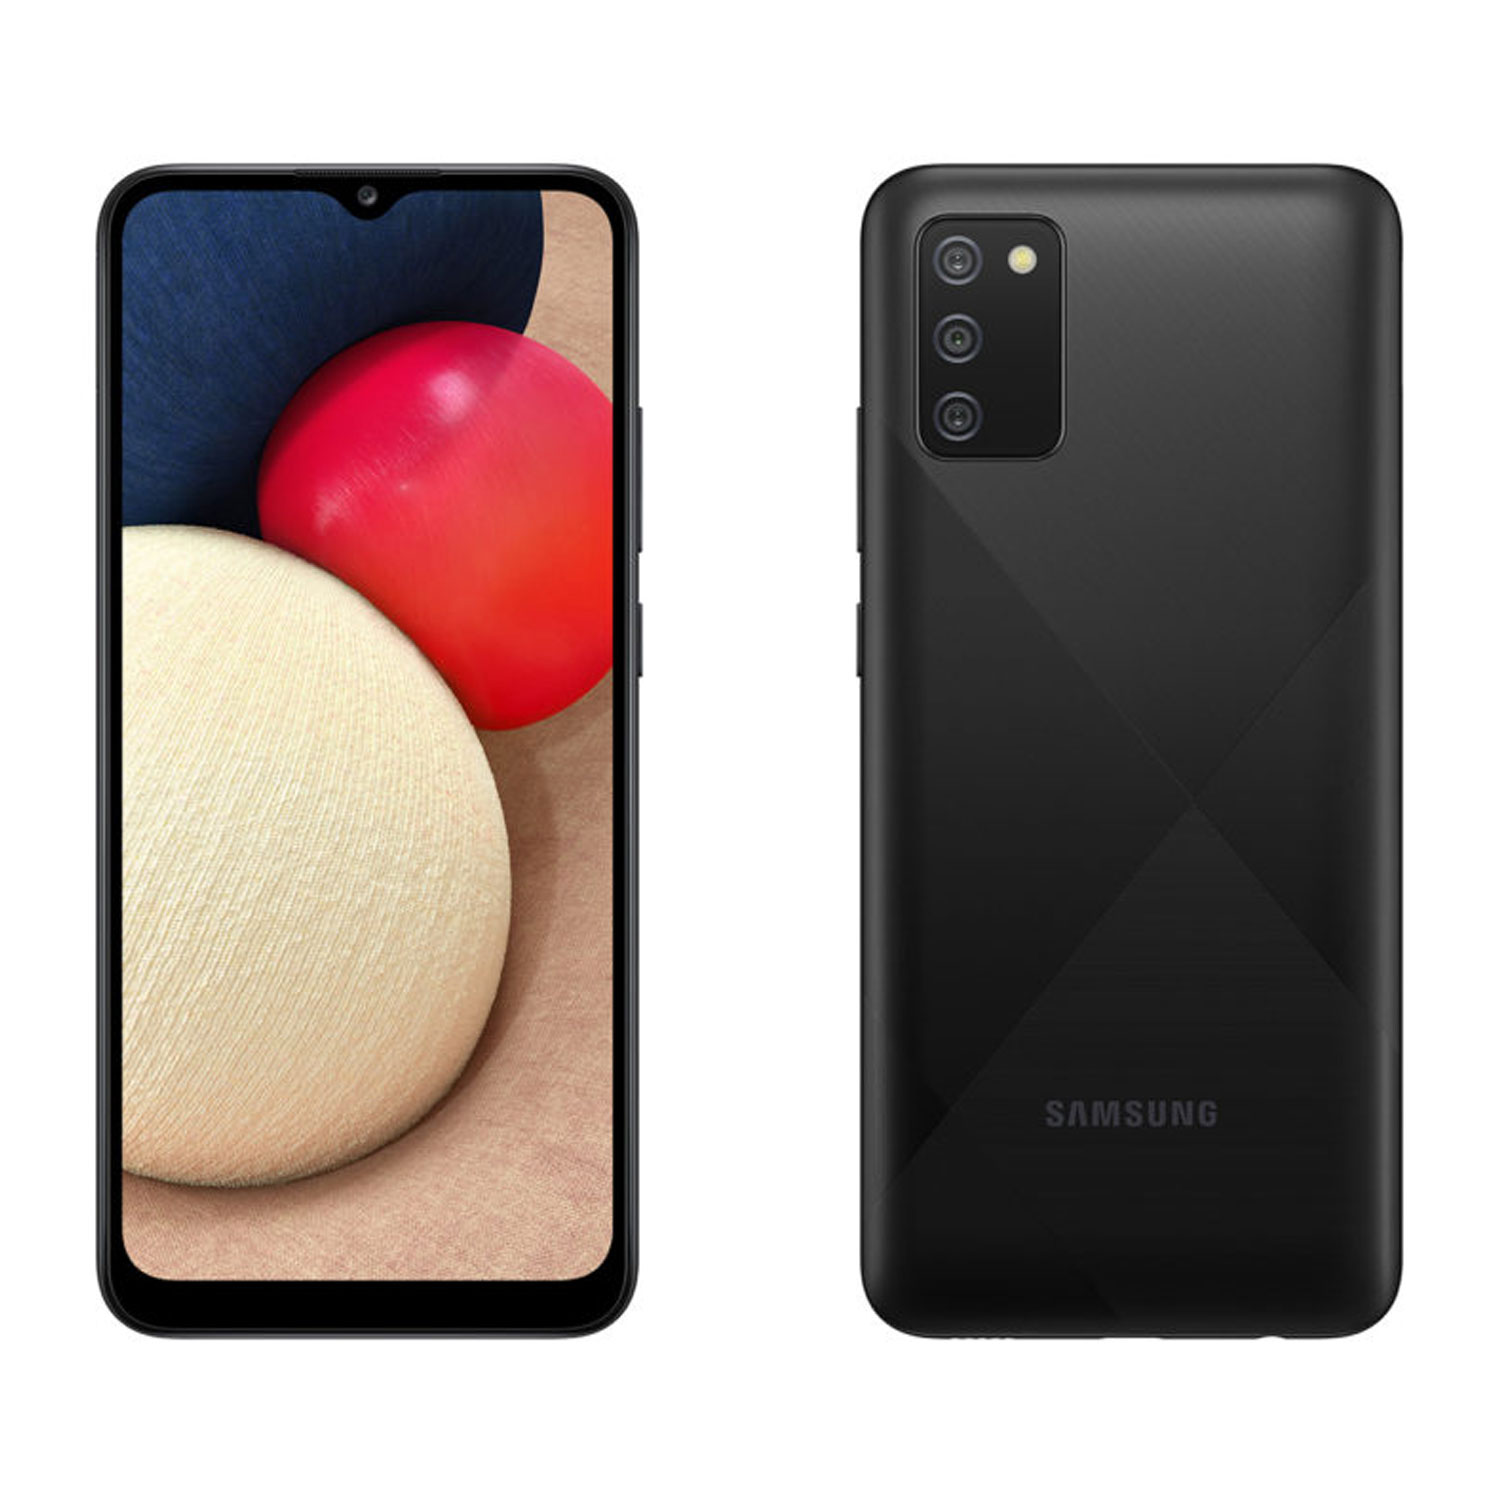 گوشی موبایل سامسونگ مدل Galaxy A02s SM-A025F/DS دو سیم کارت ظرفیت 64 گیگابایت و رم 4 گیگابایت